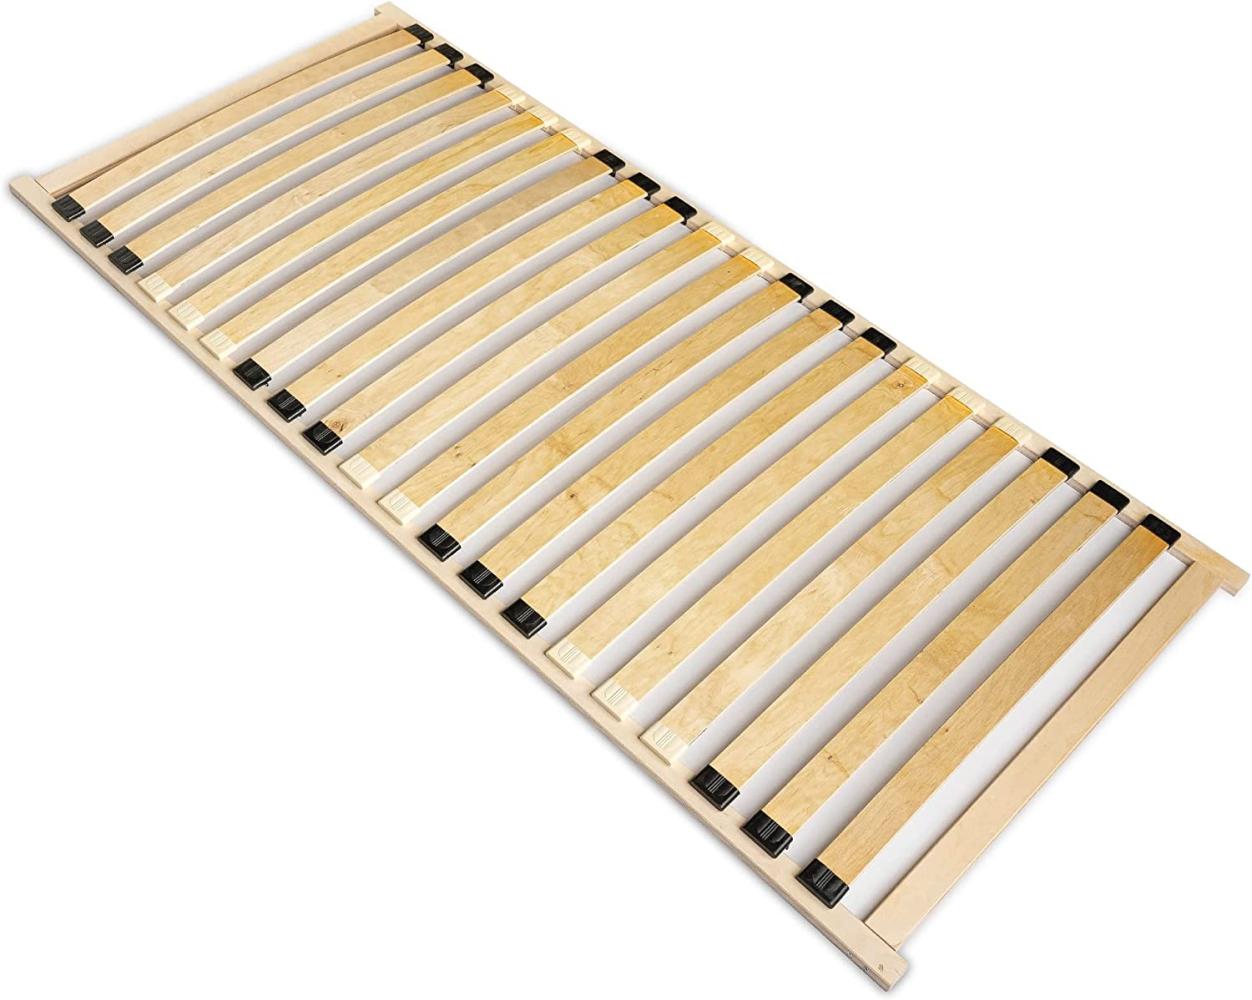 Lattenrost Basic-Frame 80x200cm für Bett I Hochwertiger Bettgestell 20 Gebogene Birken I Lattenroste Holzlatten Klappbar Bestimmt für Feder- sowie Schaummatratzen. (Single, 80x200) Bild 1